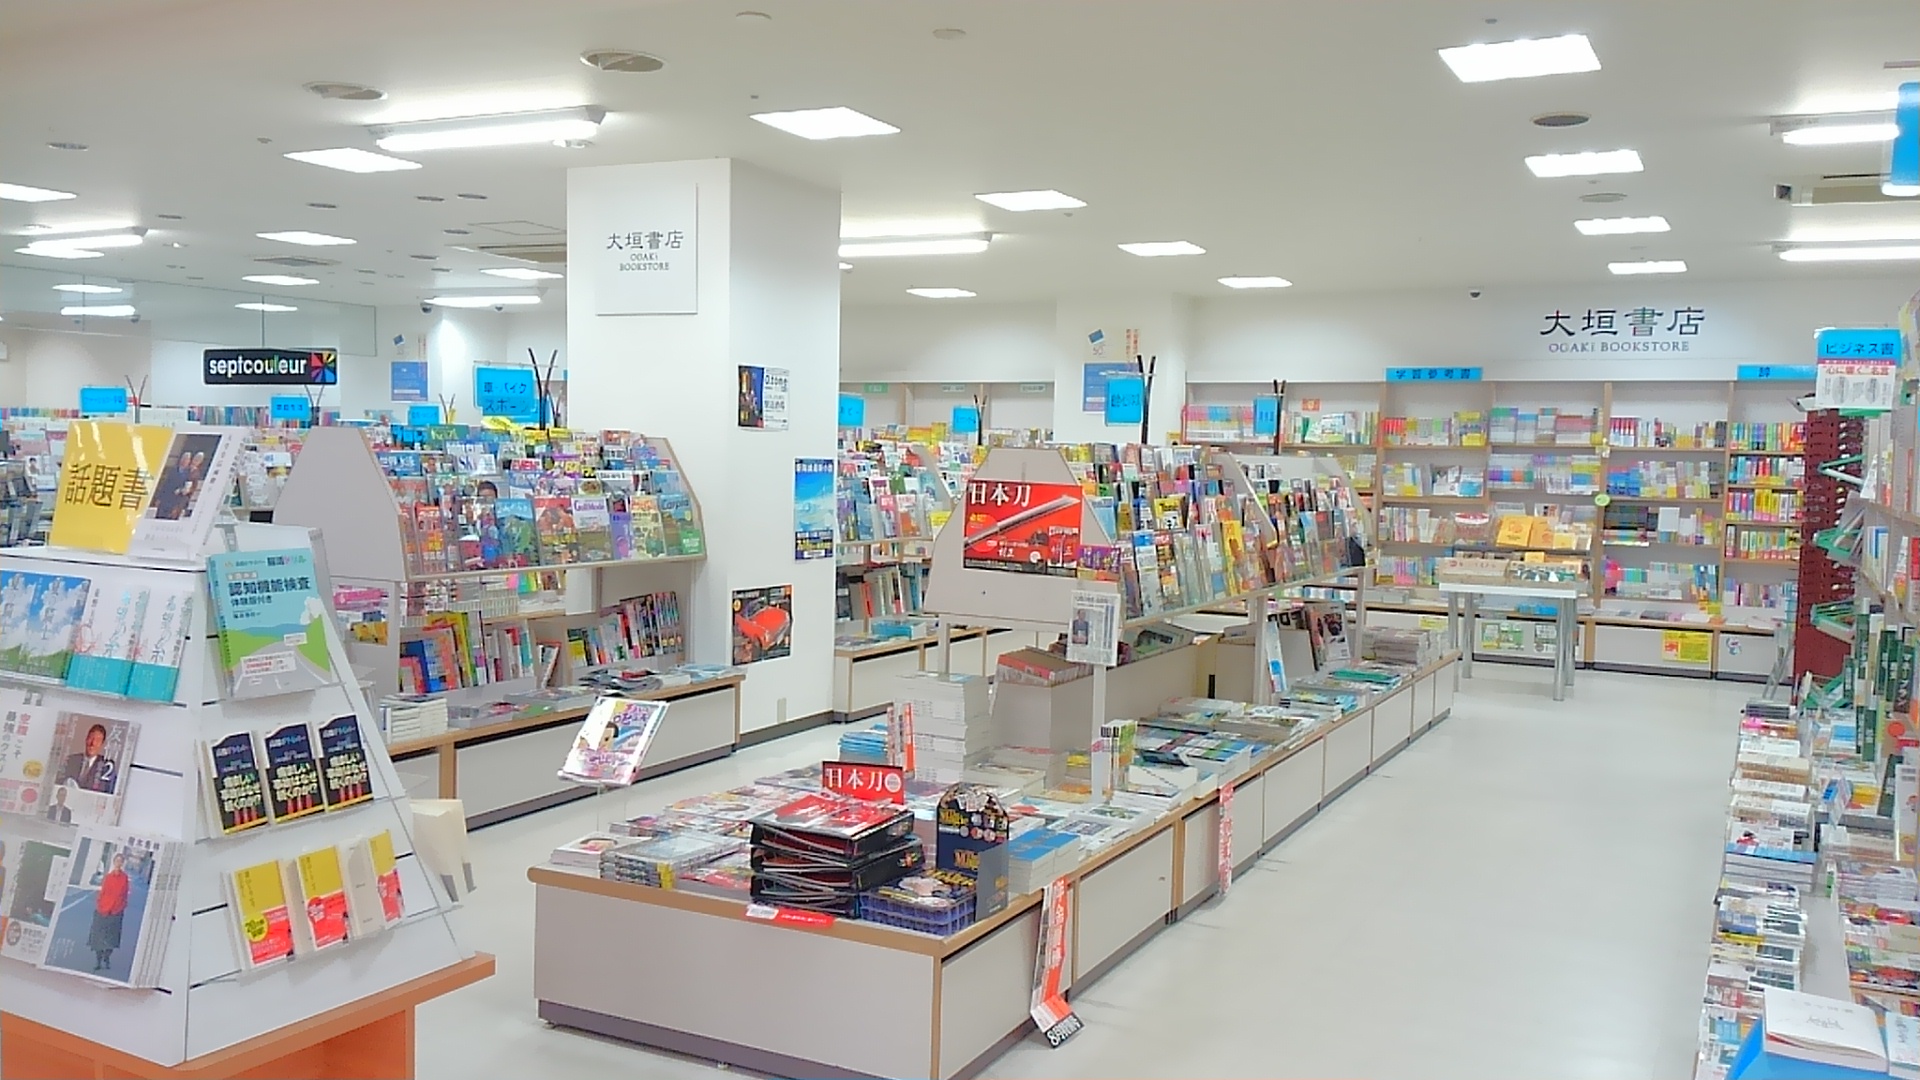 大垣書店 創立70年を迎え 京都府下を中心に39店舗を展開する大垣書店